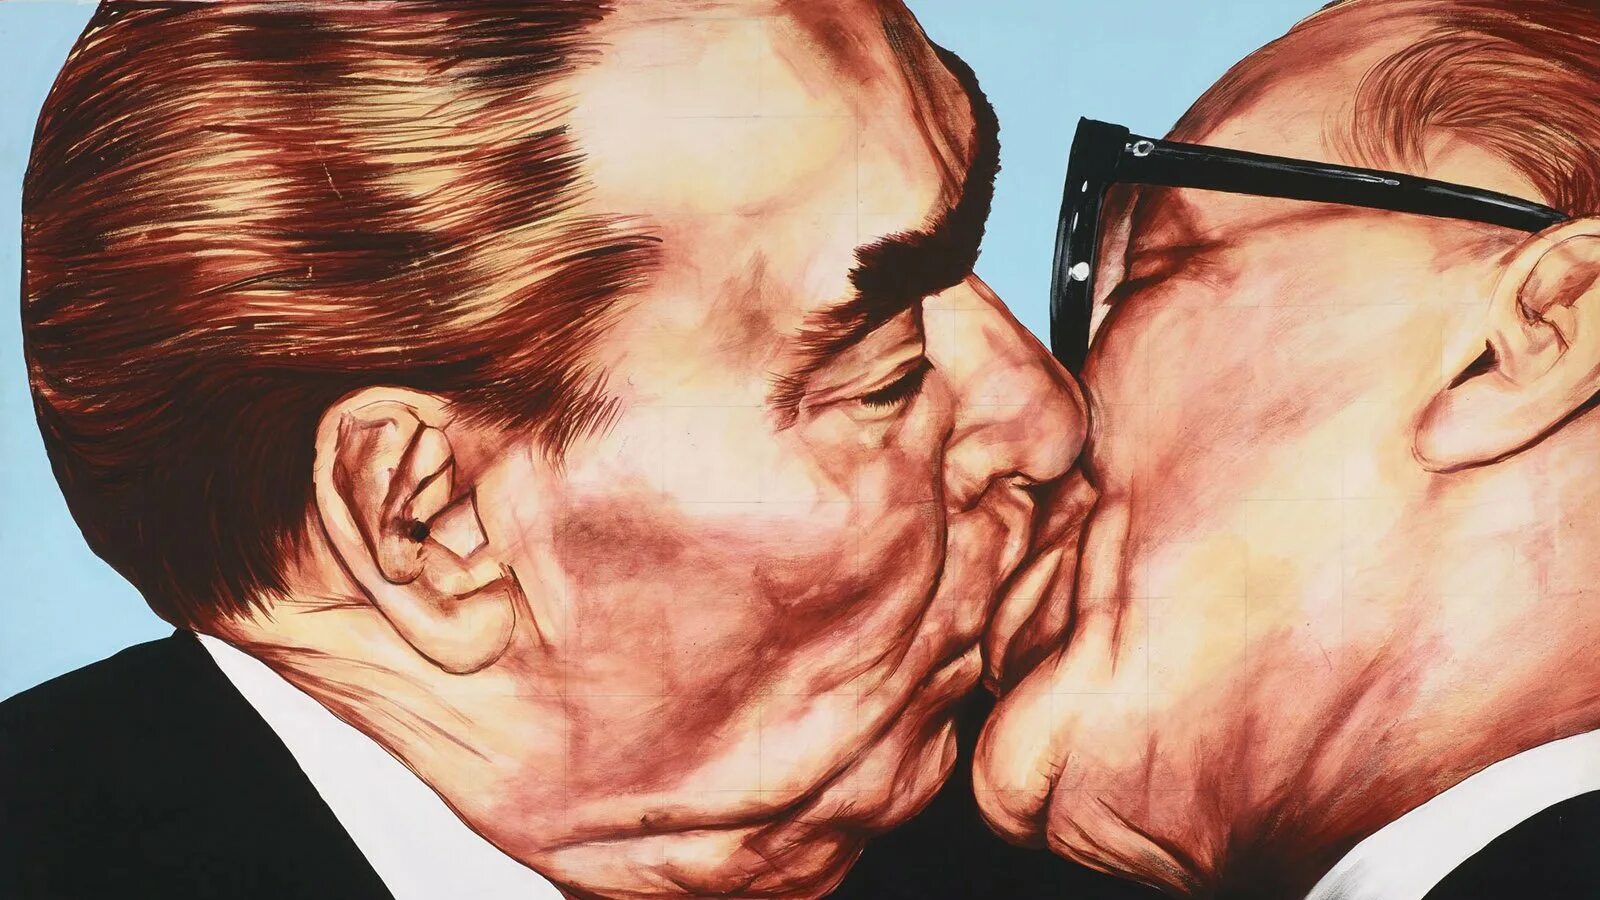 Господи помоги мне выжить среди этой. Брежнев и Хонеккер поцелуй. Поцелуй Брежнева с Хонеккером. Брежнев Хонеккер Братский поцелуй.